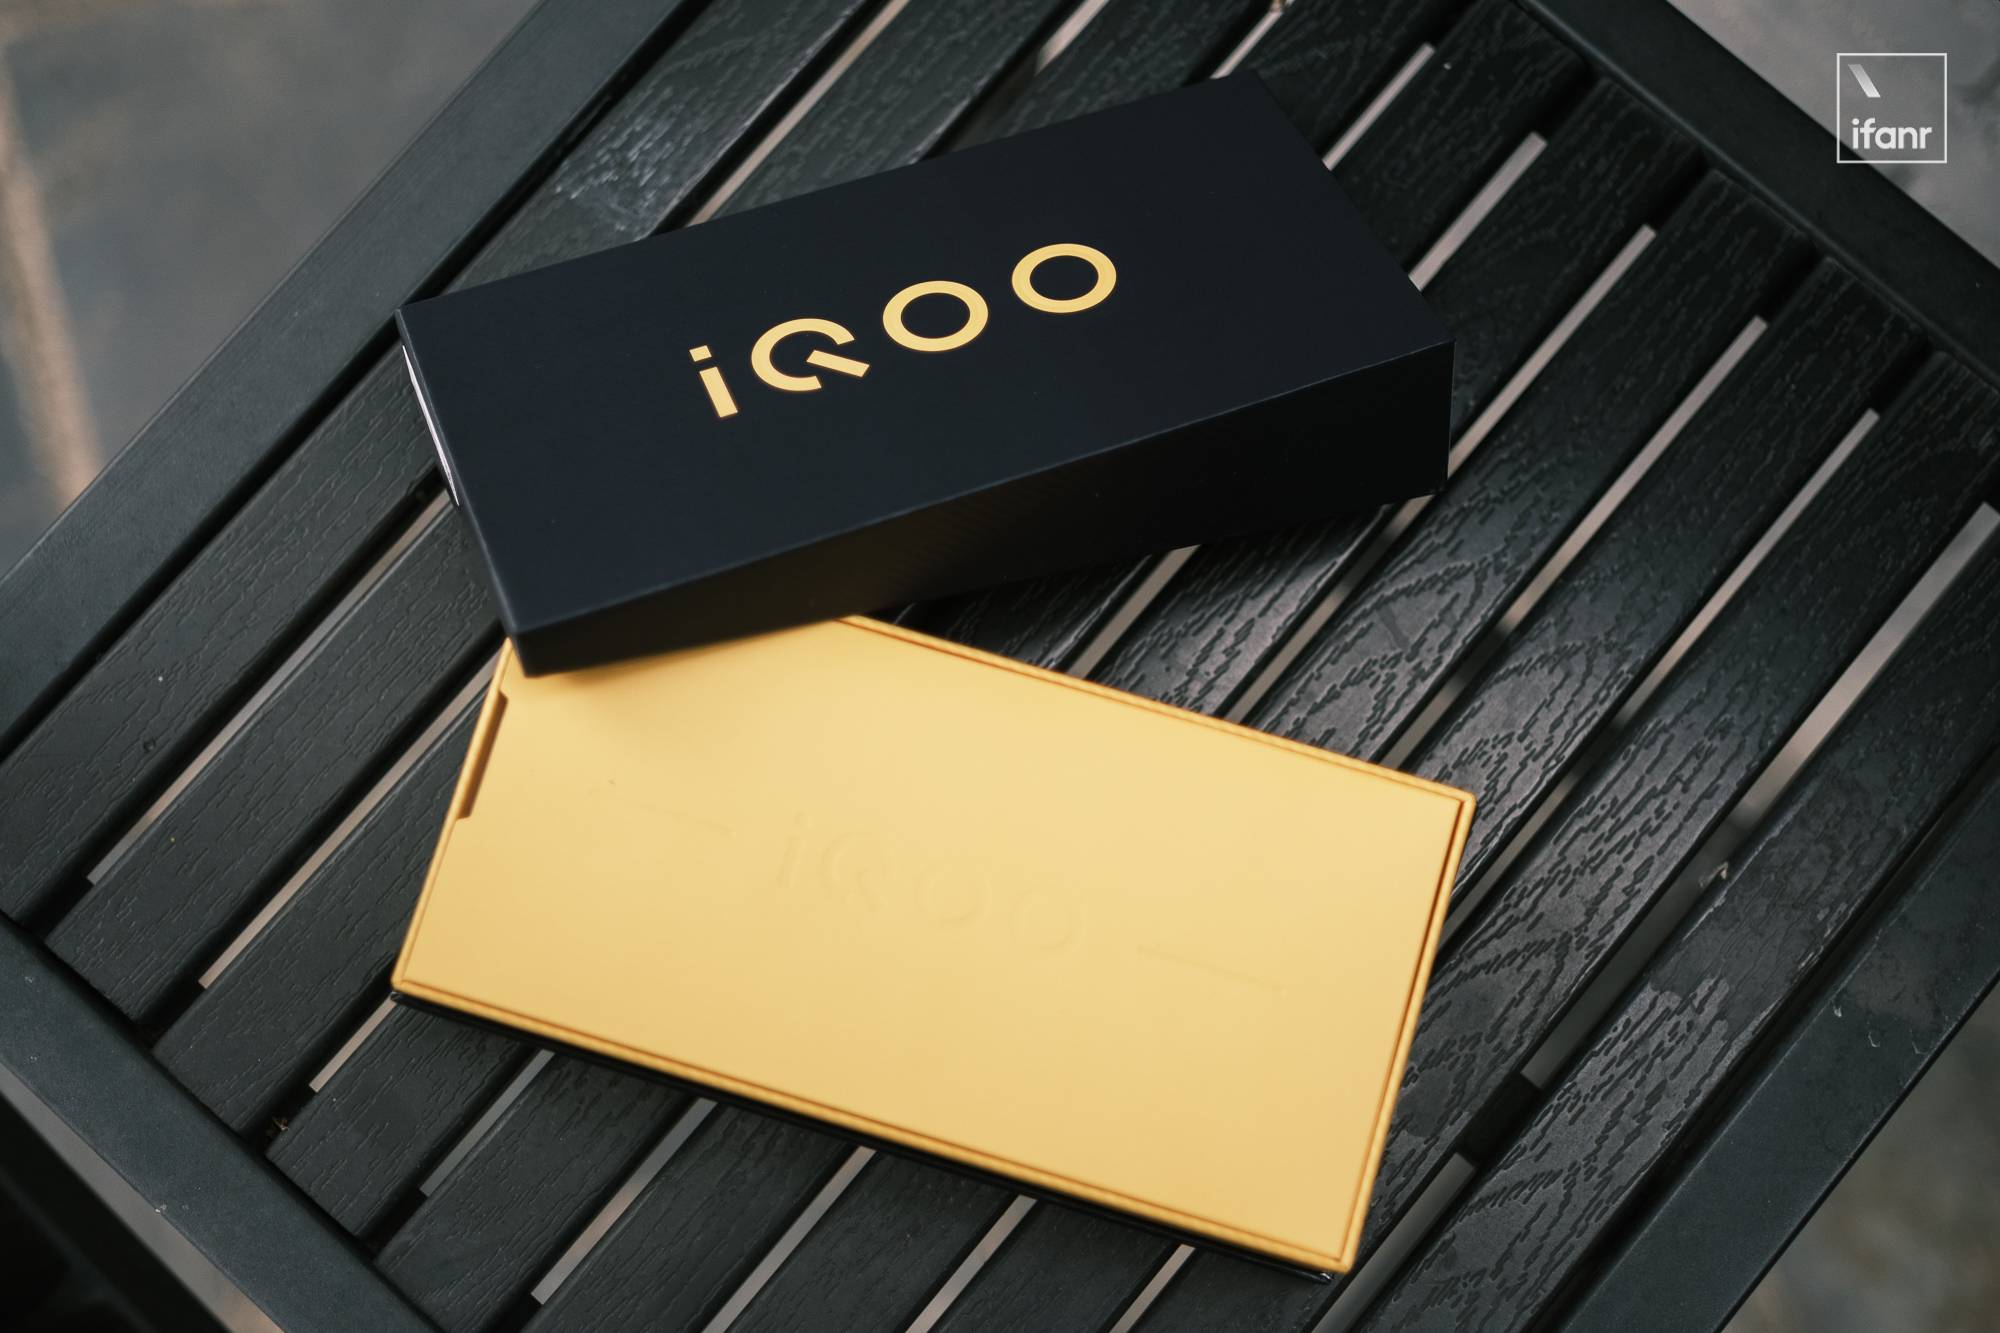 DSCF0411 - iQOO Z3 Picture Rewards: “Card Position Expert” al di sotto del prezzo di duemila